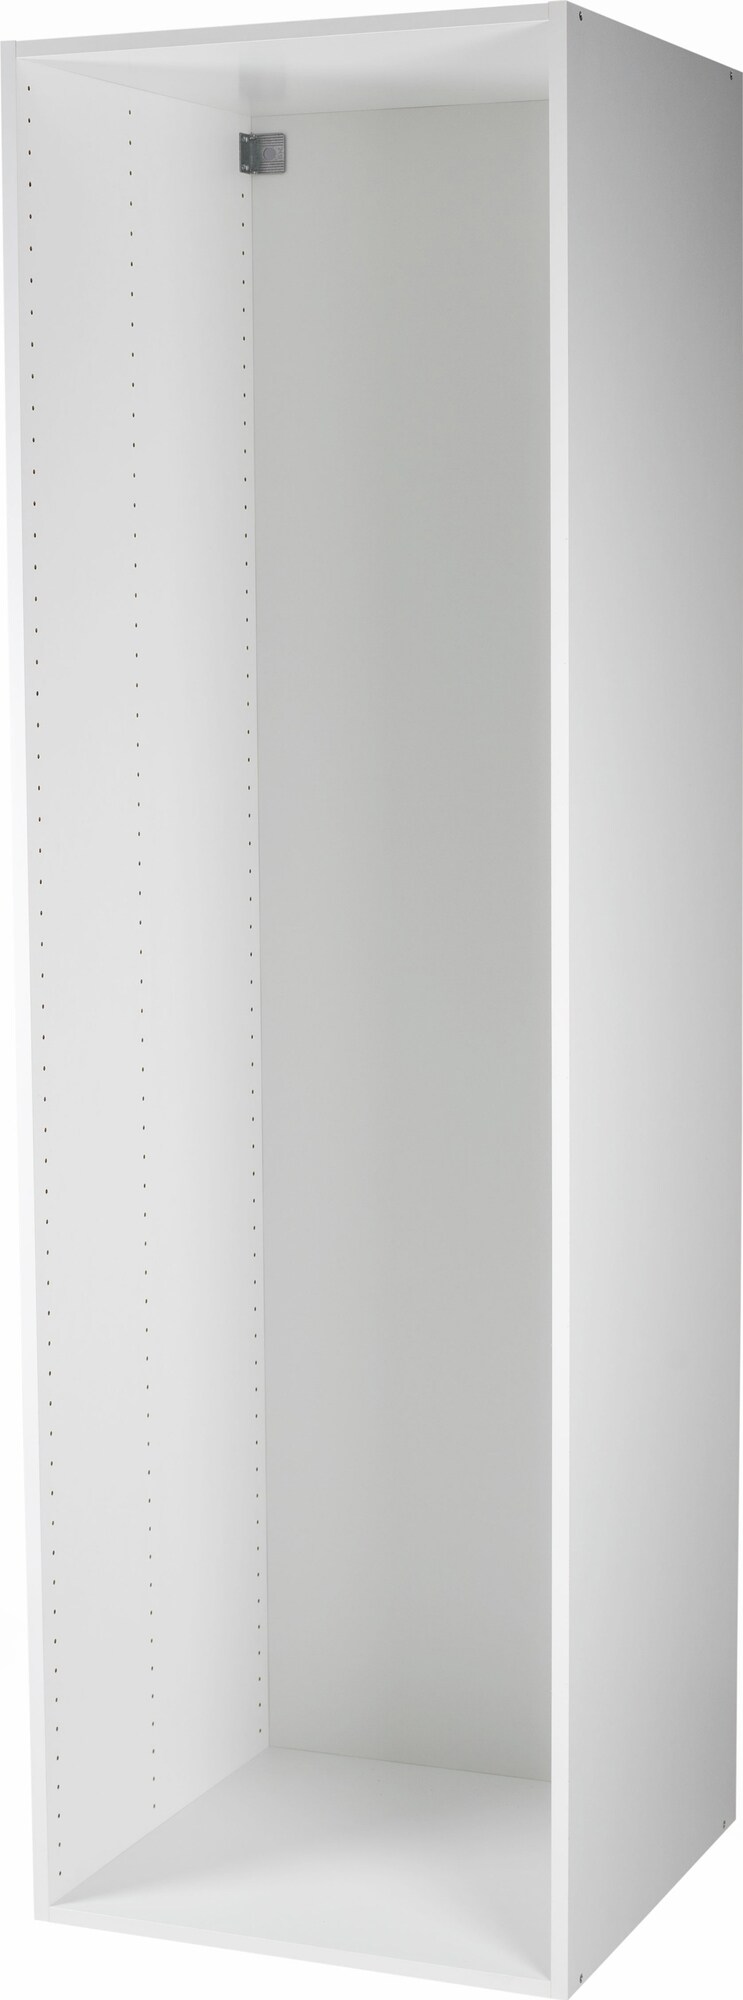 Epoq korkeakaappi 50x217 (valkoinen) - Gigantti verkkokauppa